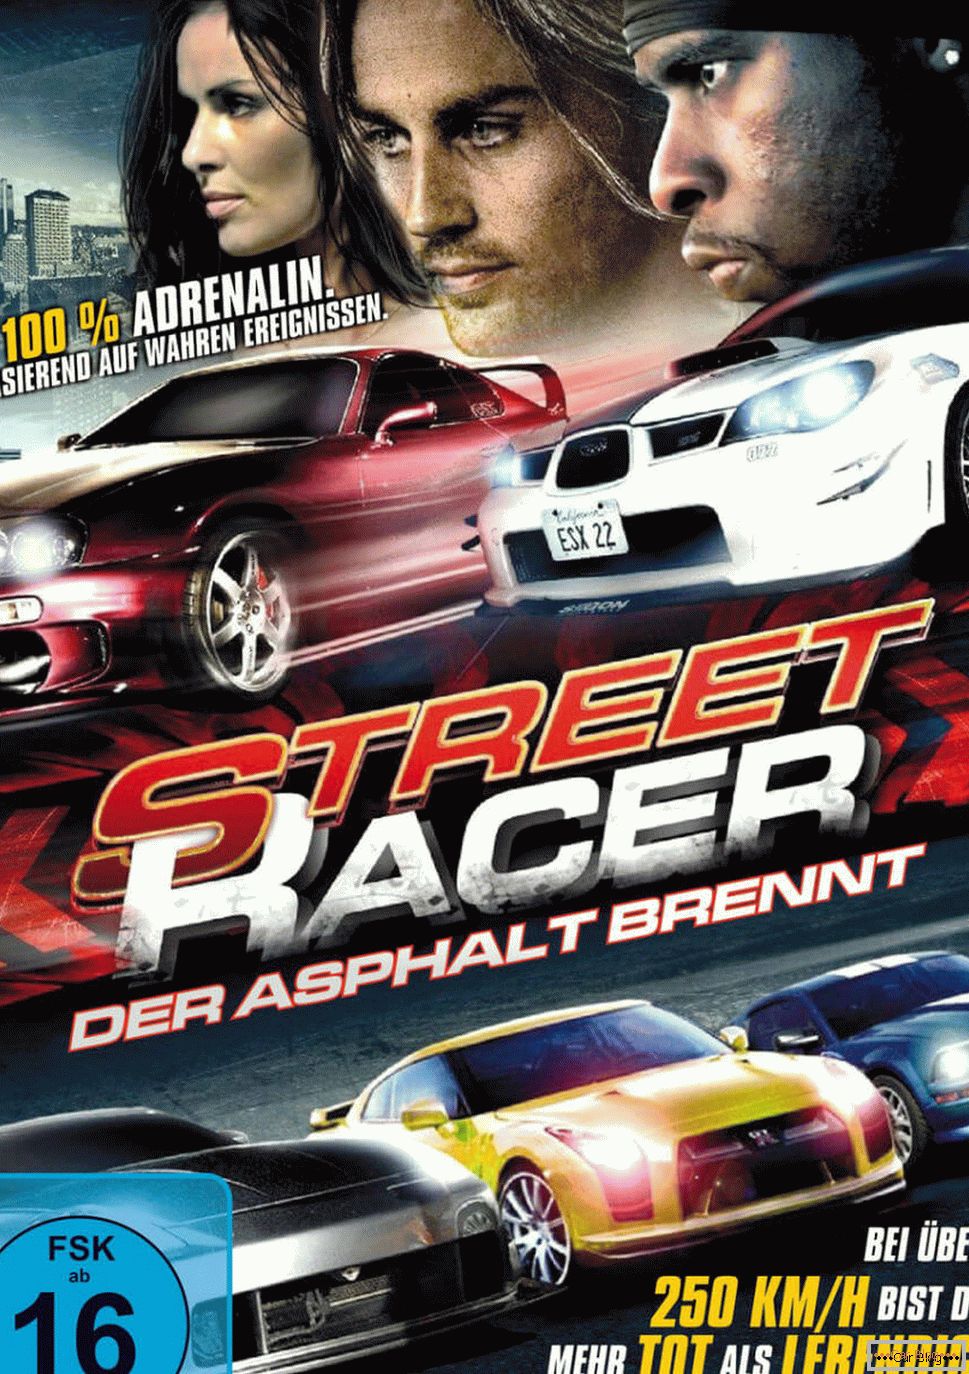 Cartaz para o filme Street racer